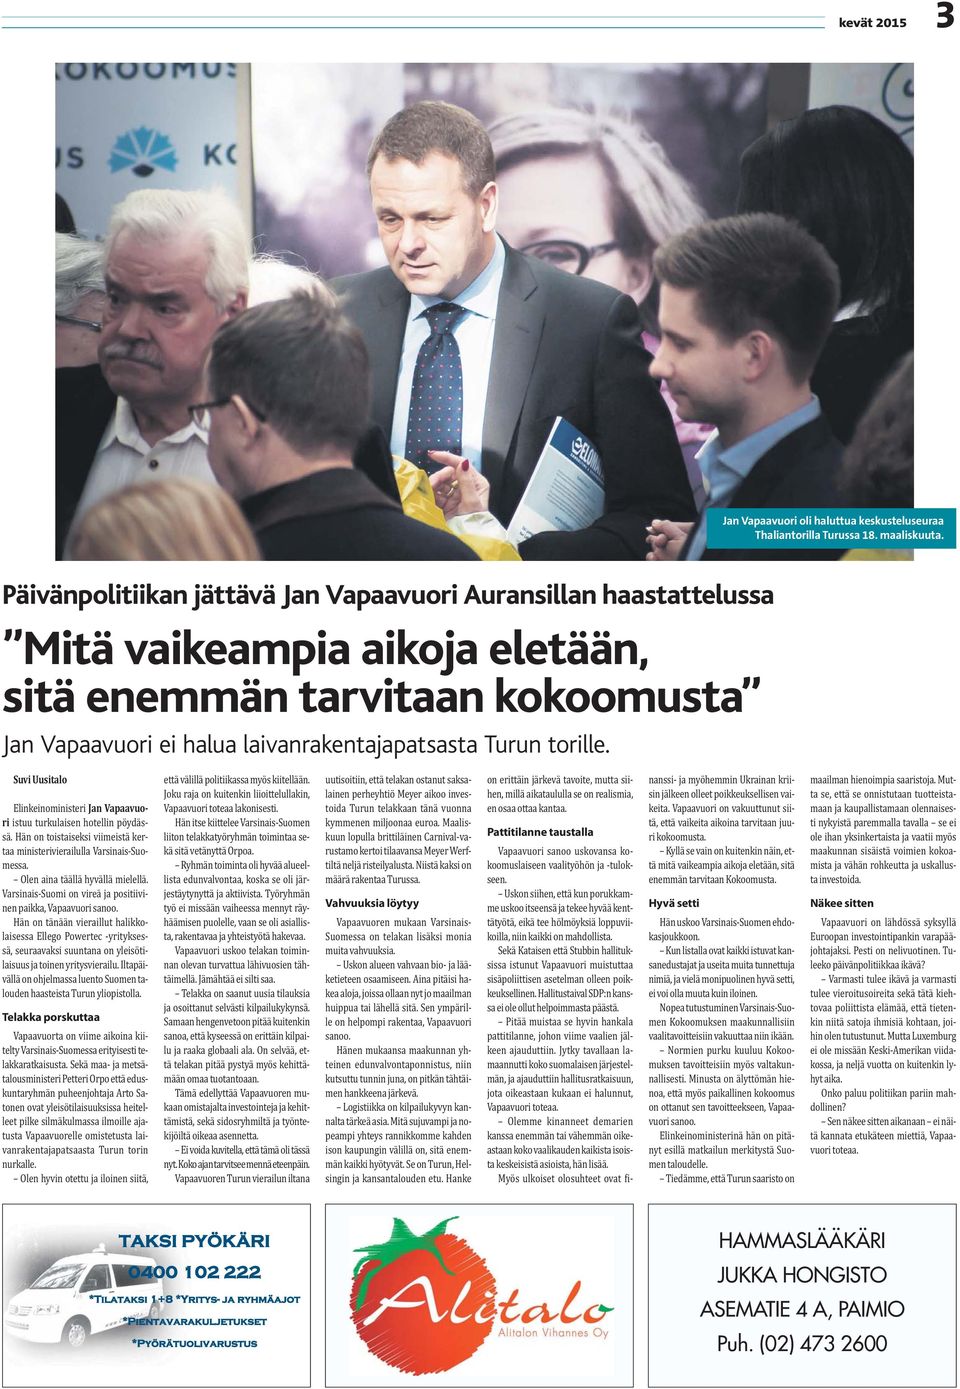 Suvi Uusitalo Elinkeinoministeri Jan Vapaavuori istuu turkulaisen hotellin pöydässä. Hän on toistaiseksi viimeistä kertaa ministerivierailulla Varsinais-Suomessa. Olen aina täällä hyvällä mielellä.